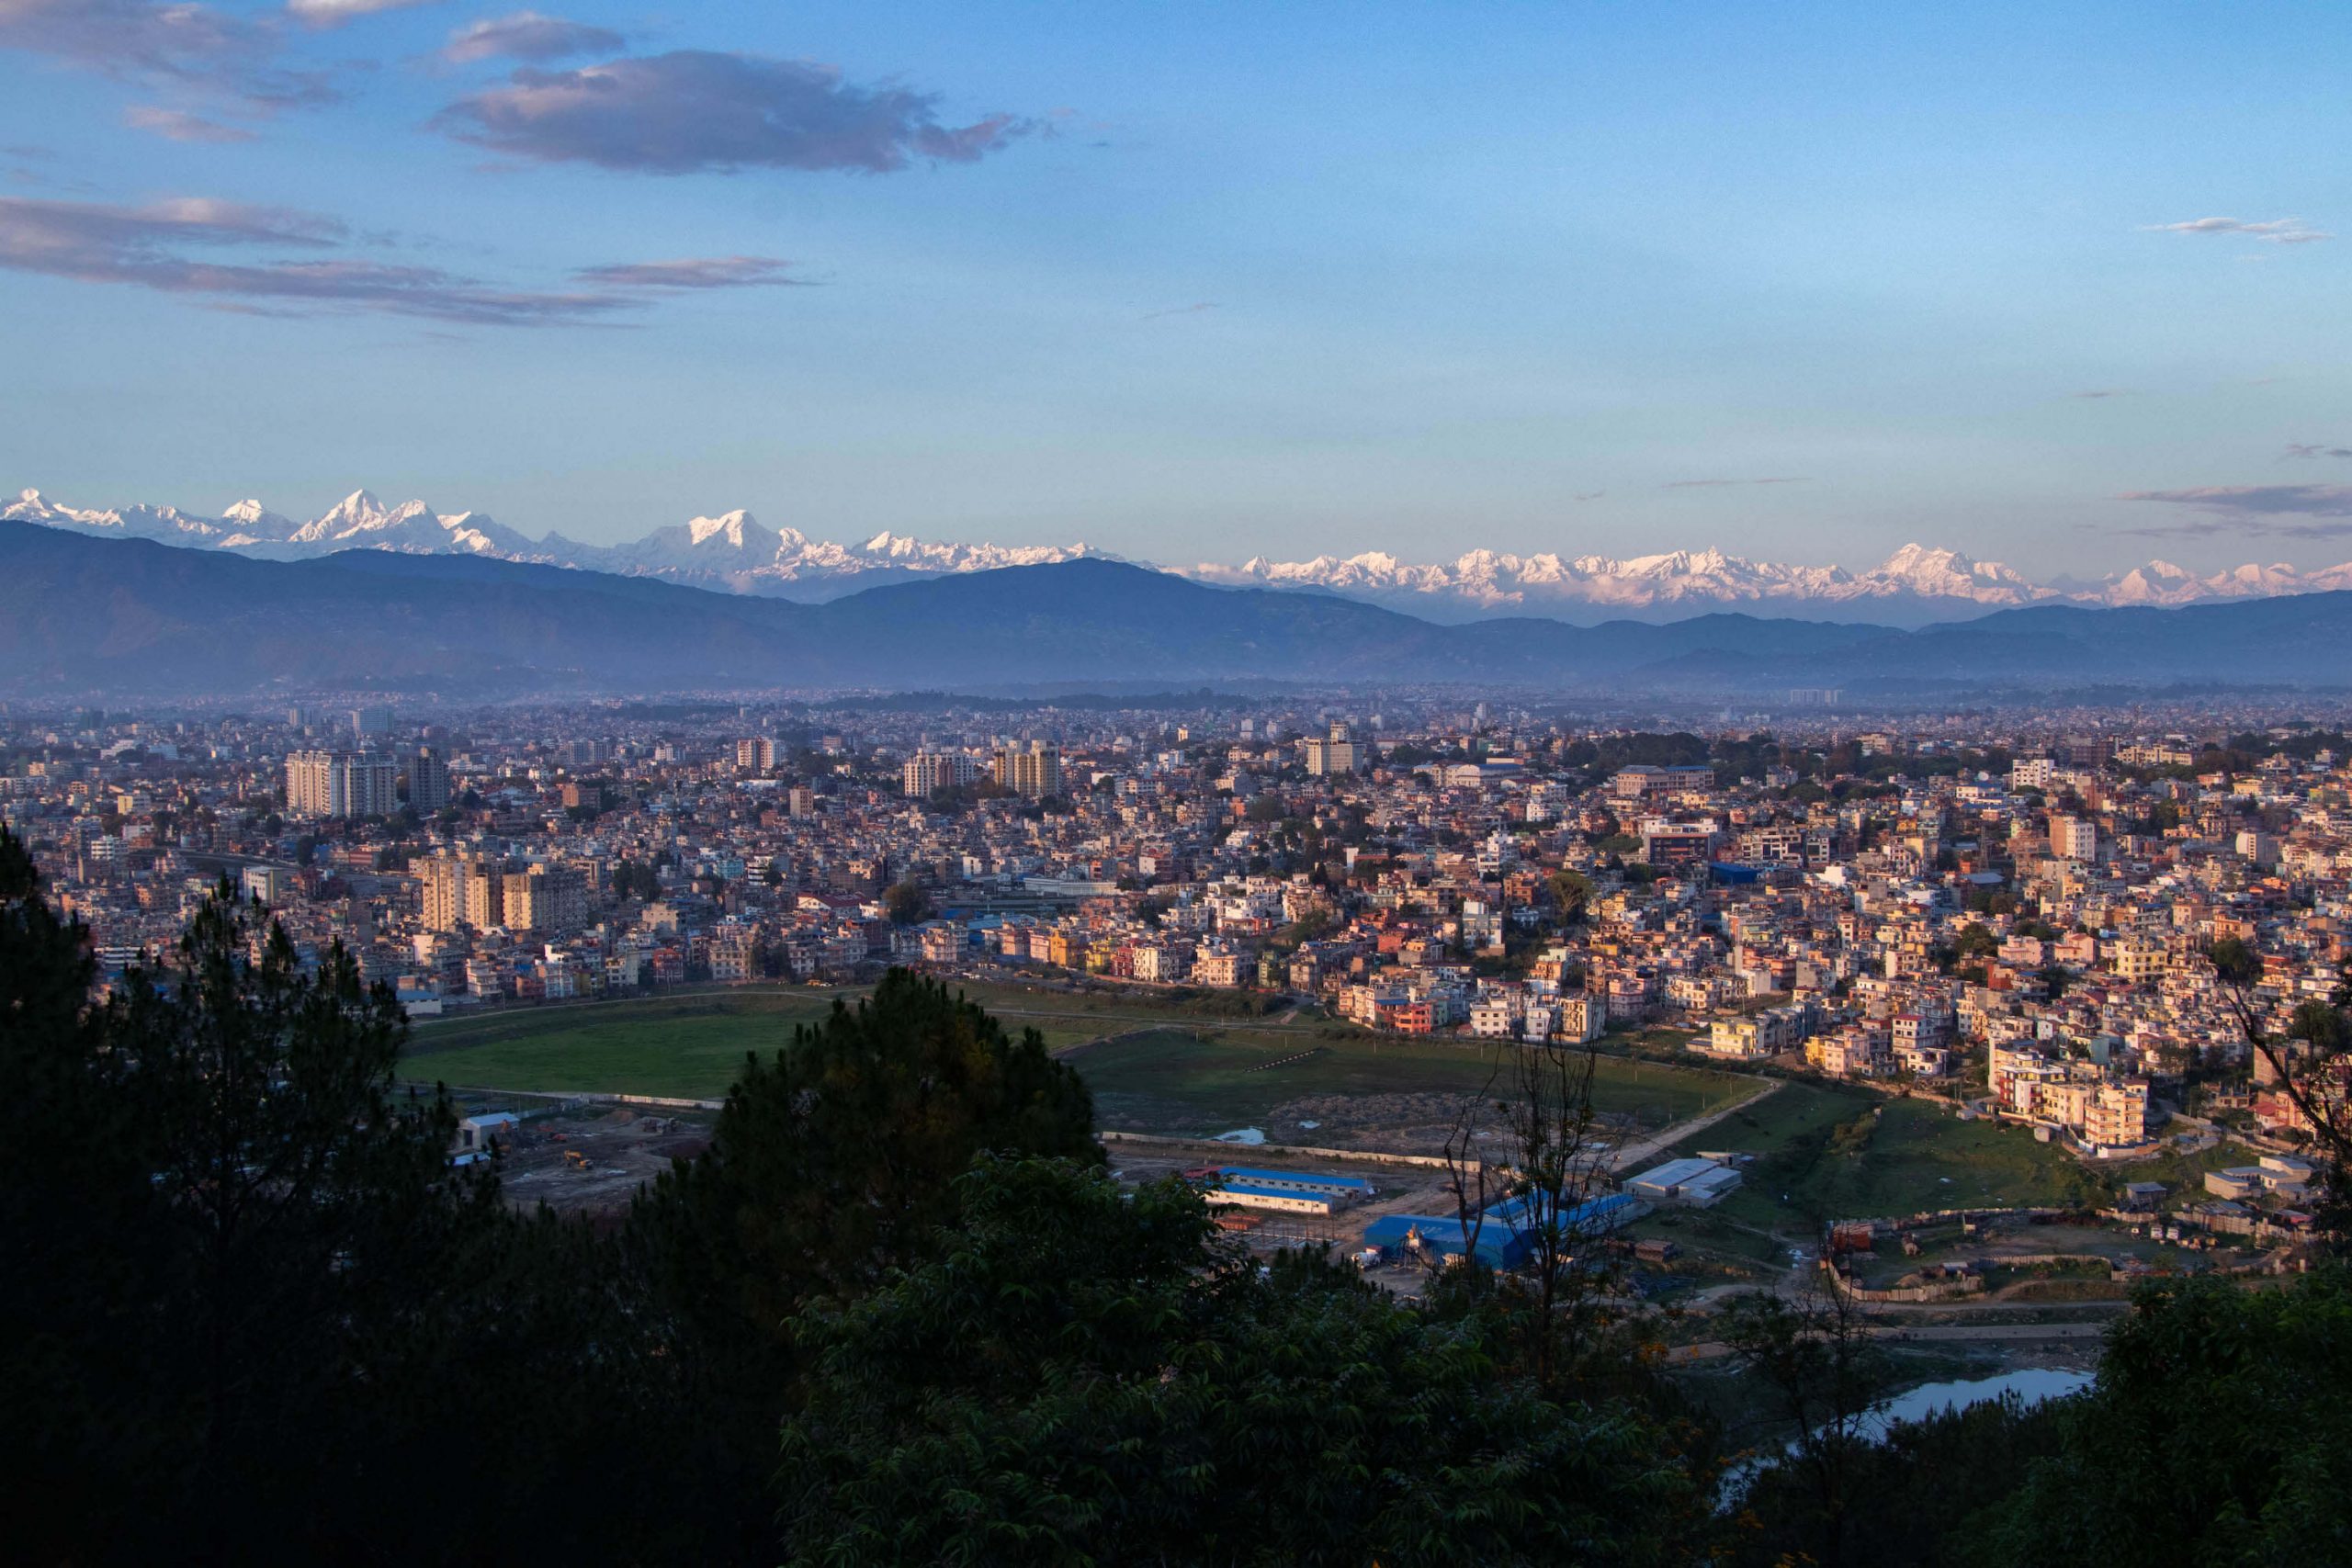 El aire sigue mejorando gracias a la cuarentena. Por primera vez en años se puede ver el Everest desde Katmandú